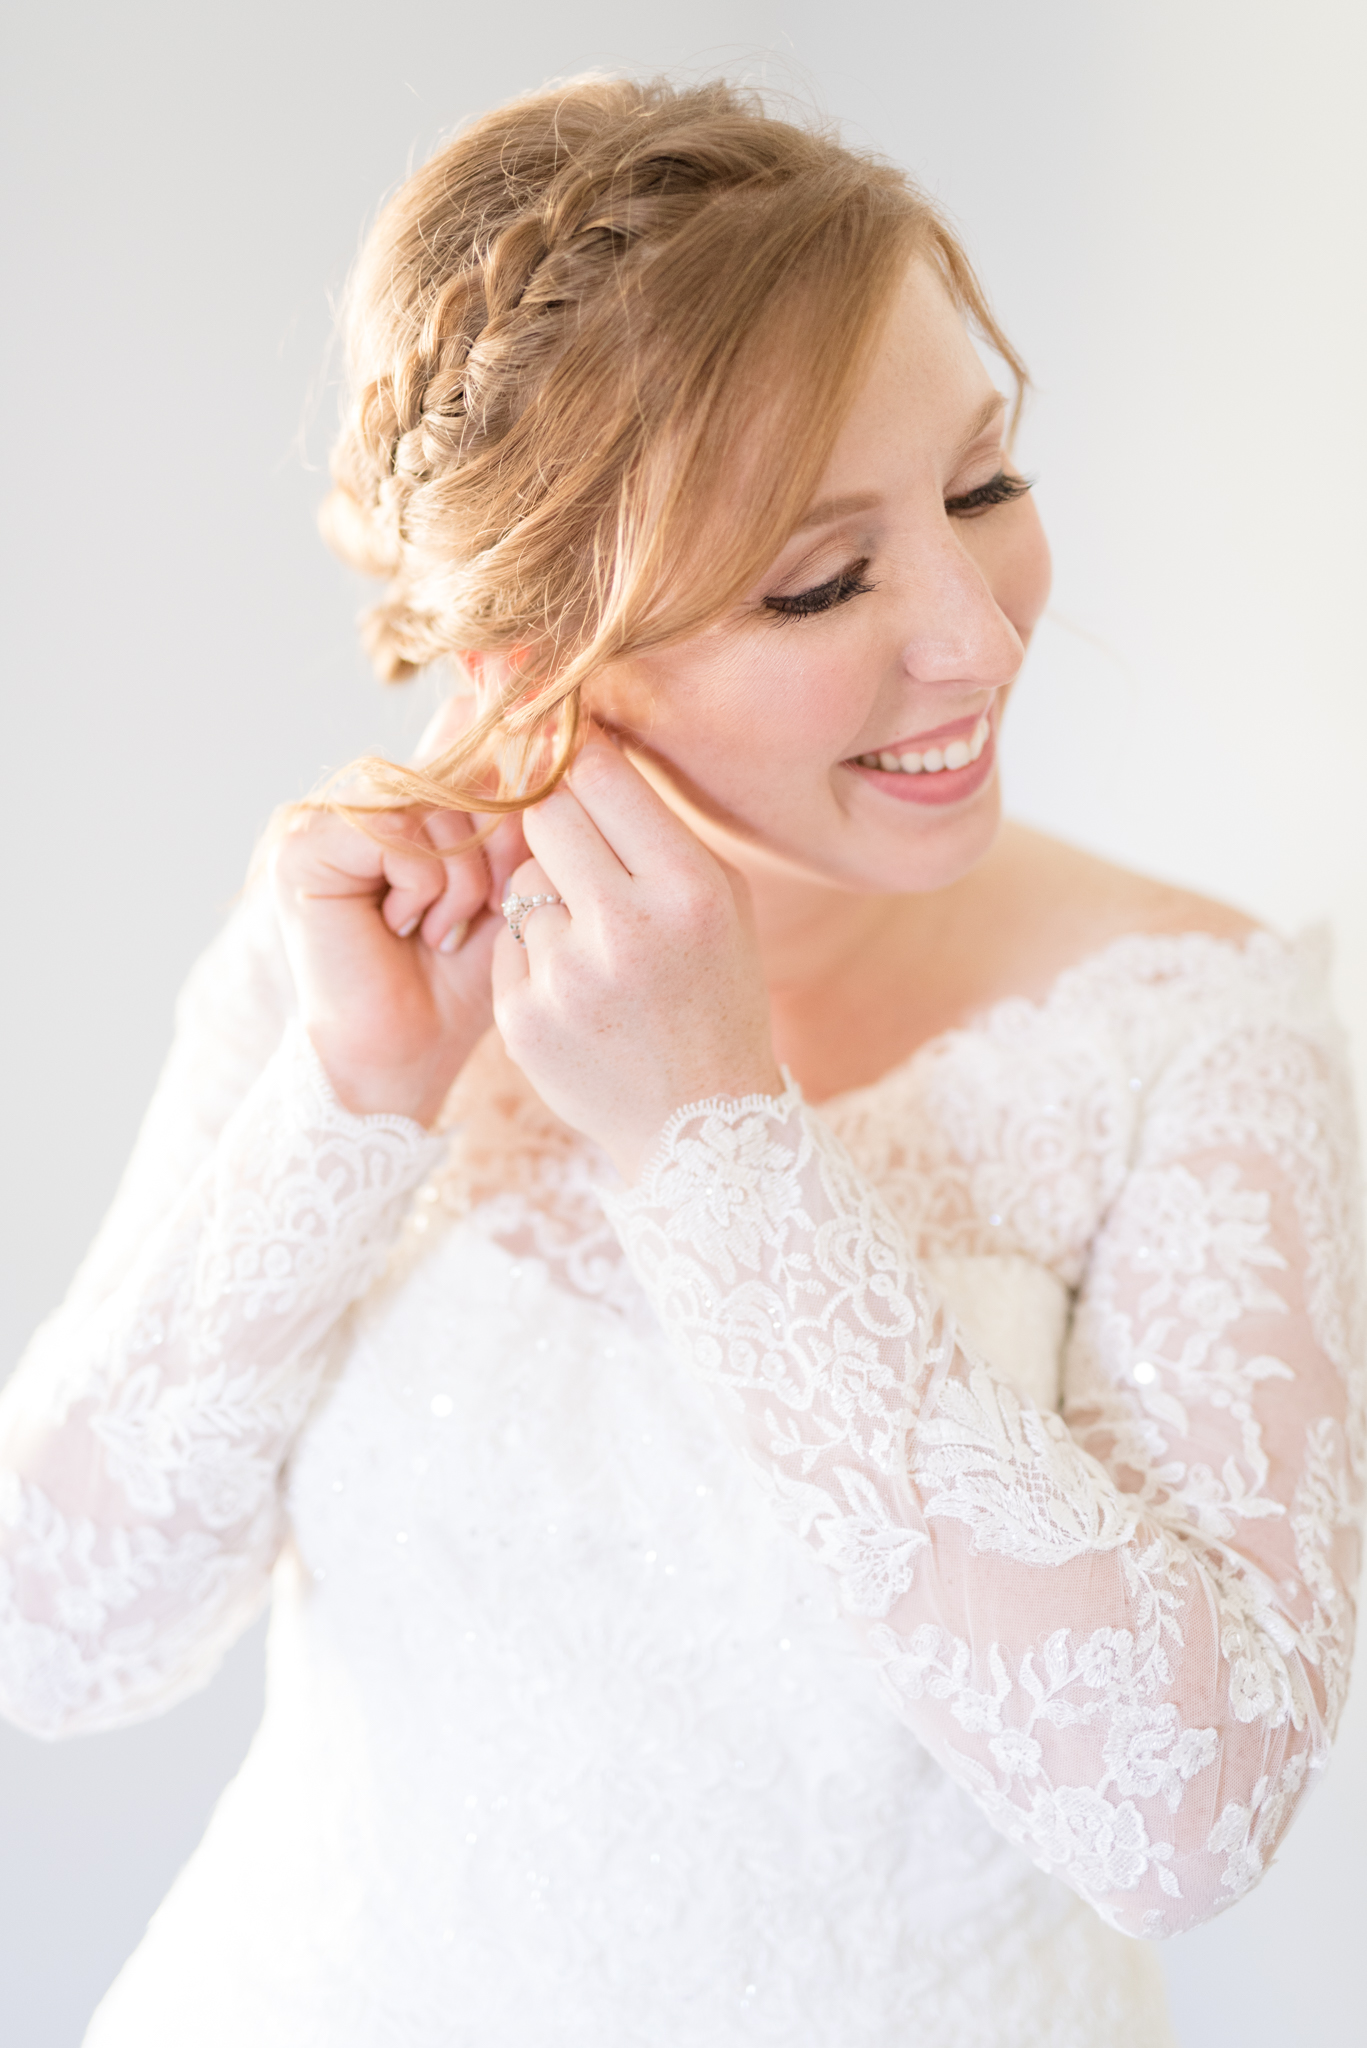 Bride puts on earrings in bridal suite.